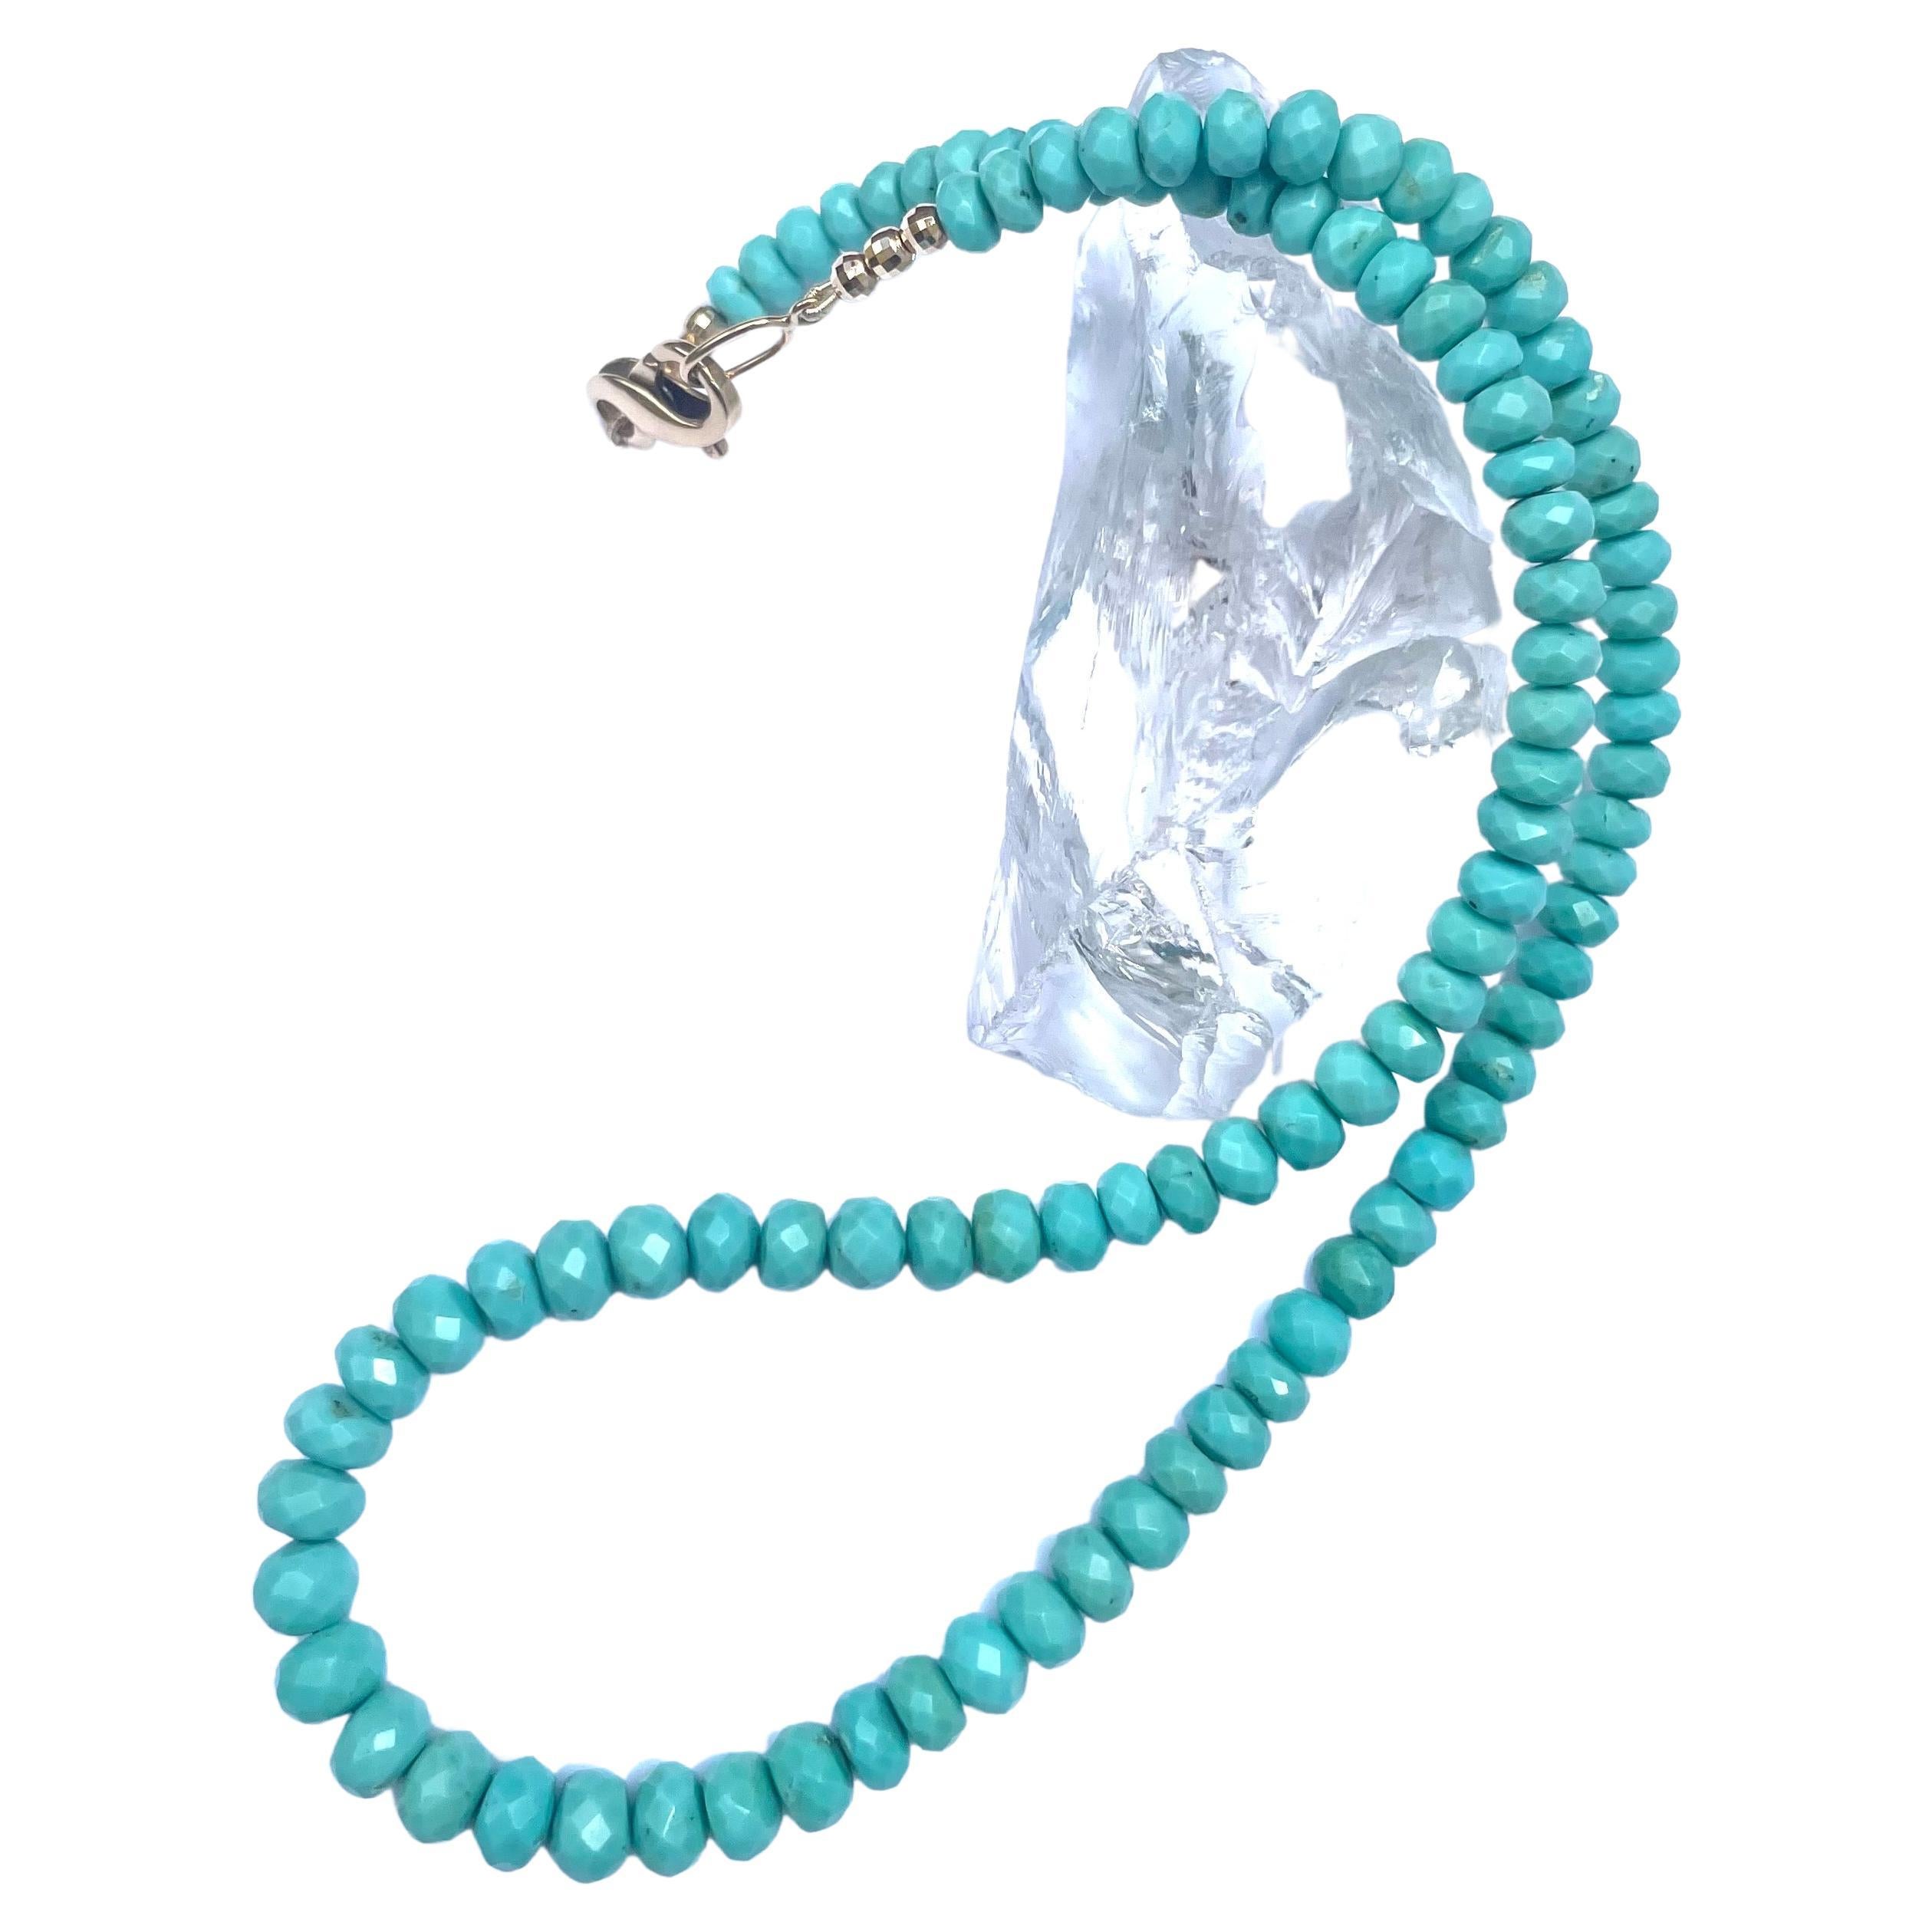 sleeping beauty turquoise beads